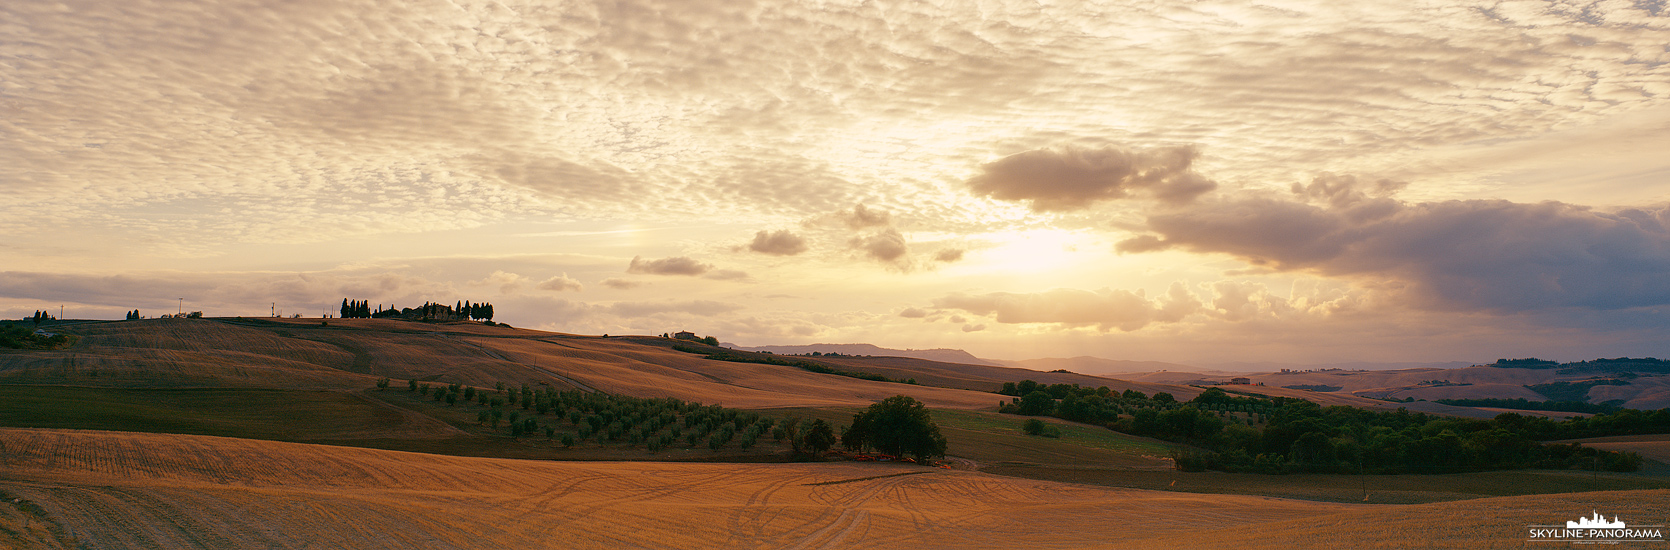 Die malerische, sanft hügelige Landschaft der italienischen Region Toskana als Panorama kurz vor Sonnenuntergang.